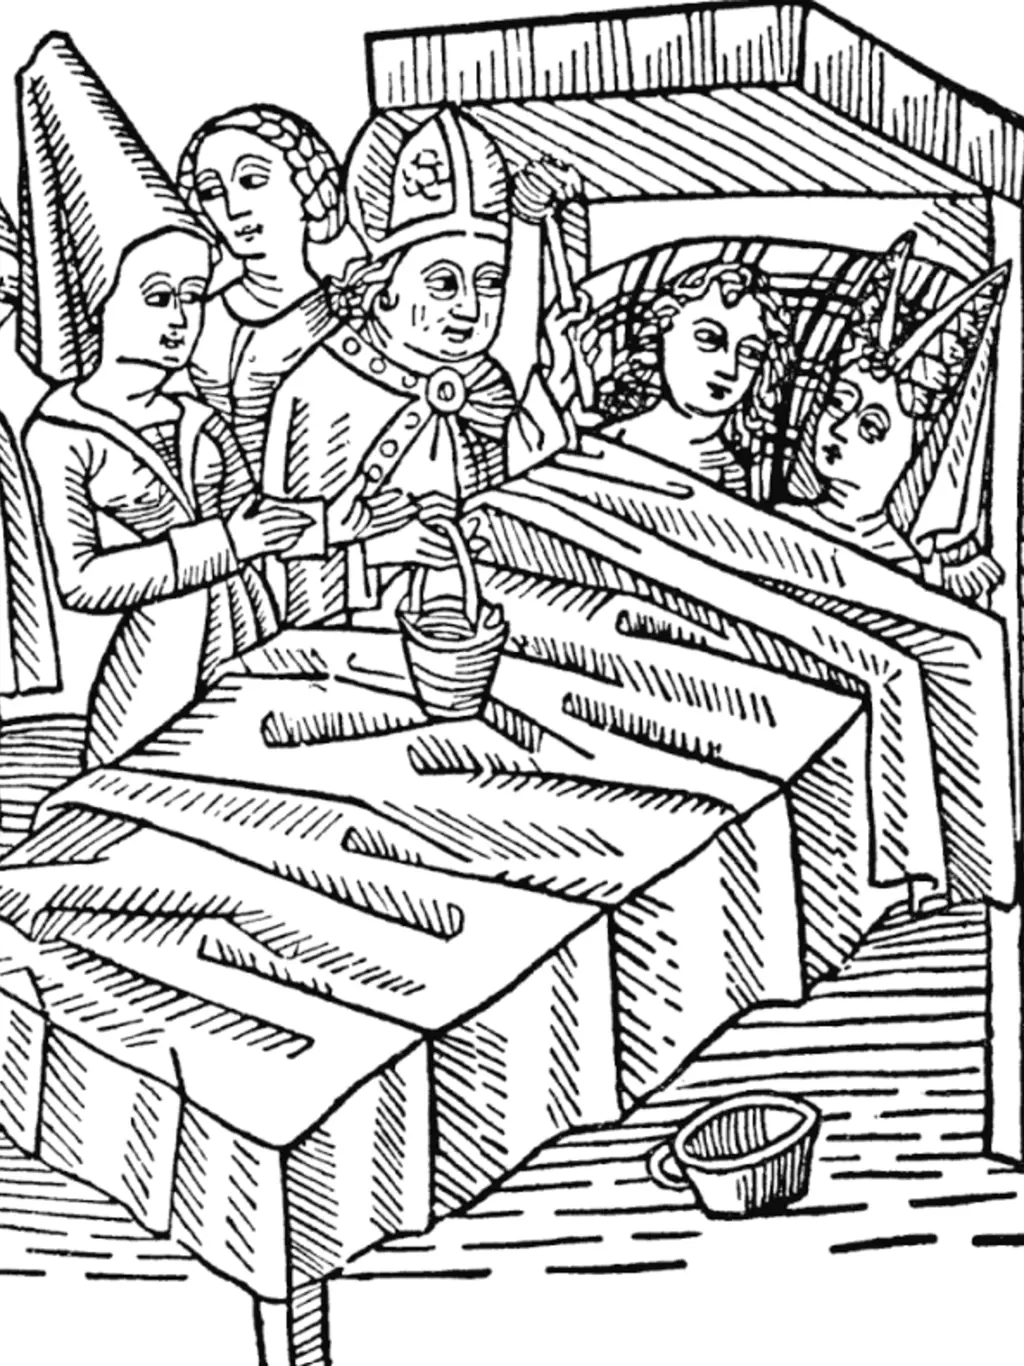 jak vypadala svatba ve středověku: největším ponížením byla pro novomanžele veřejná svatební noc